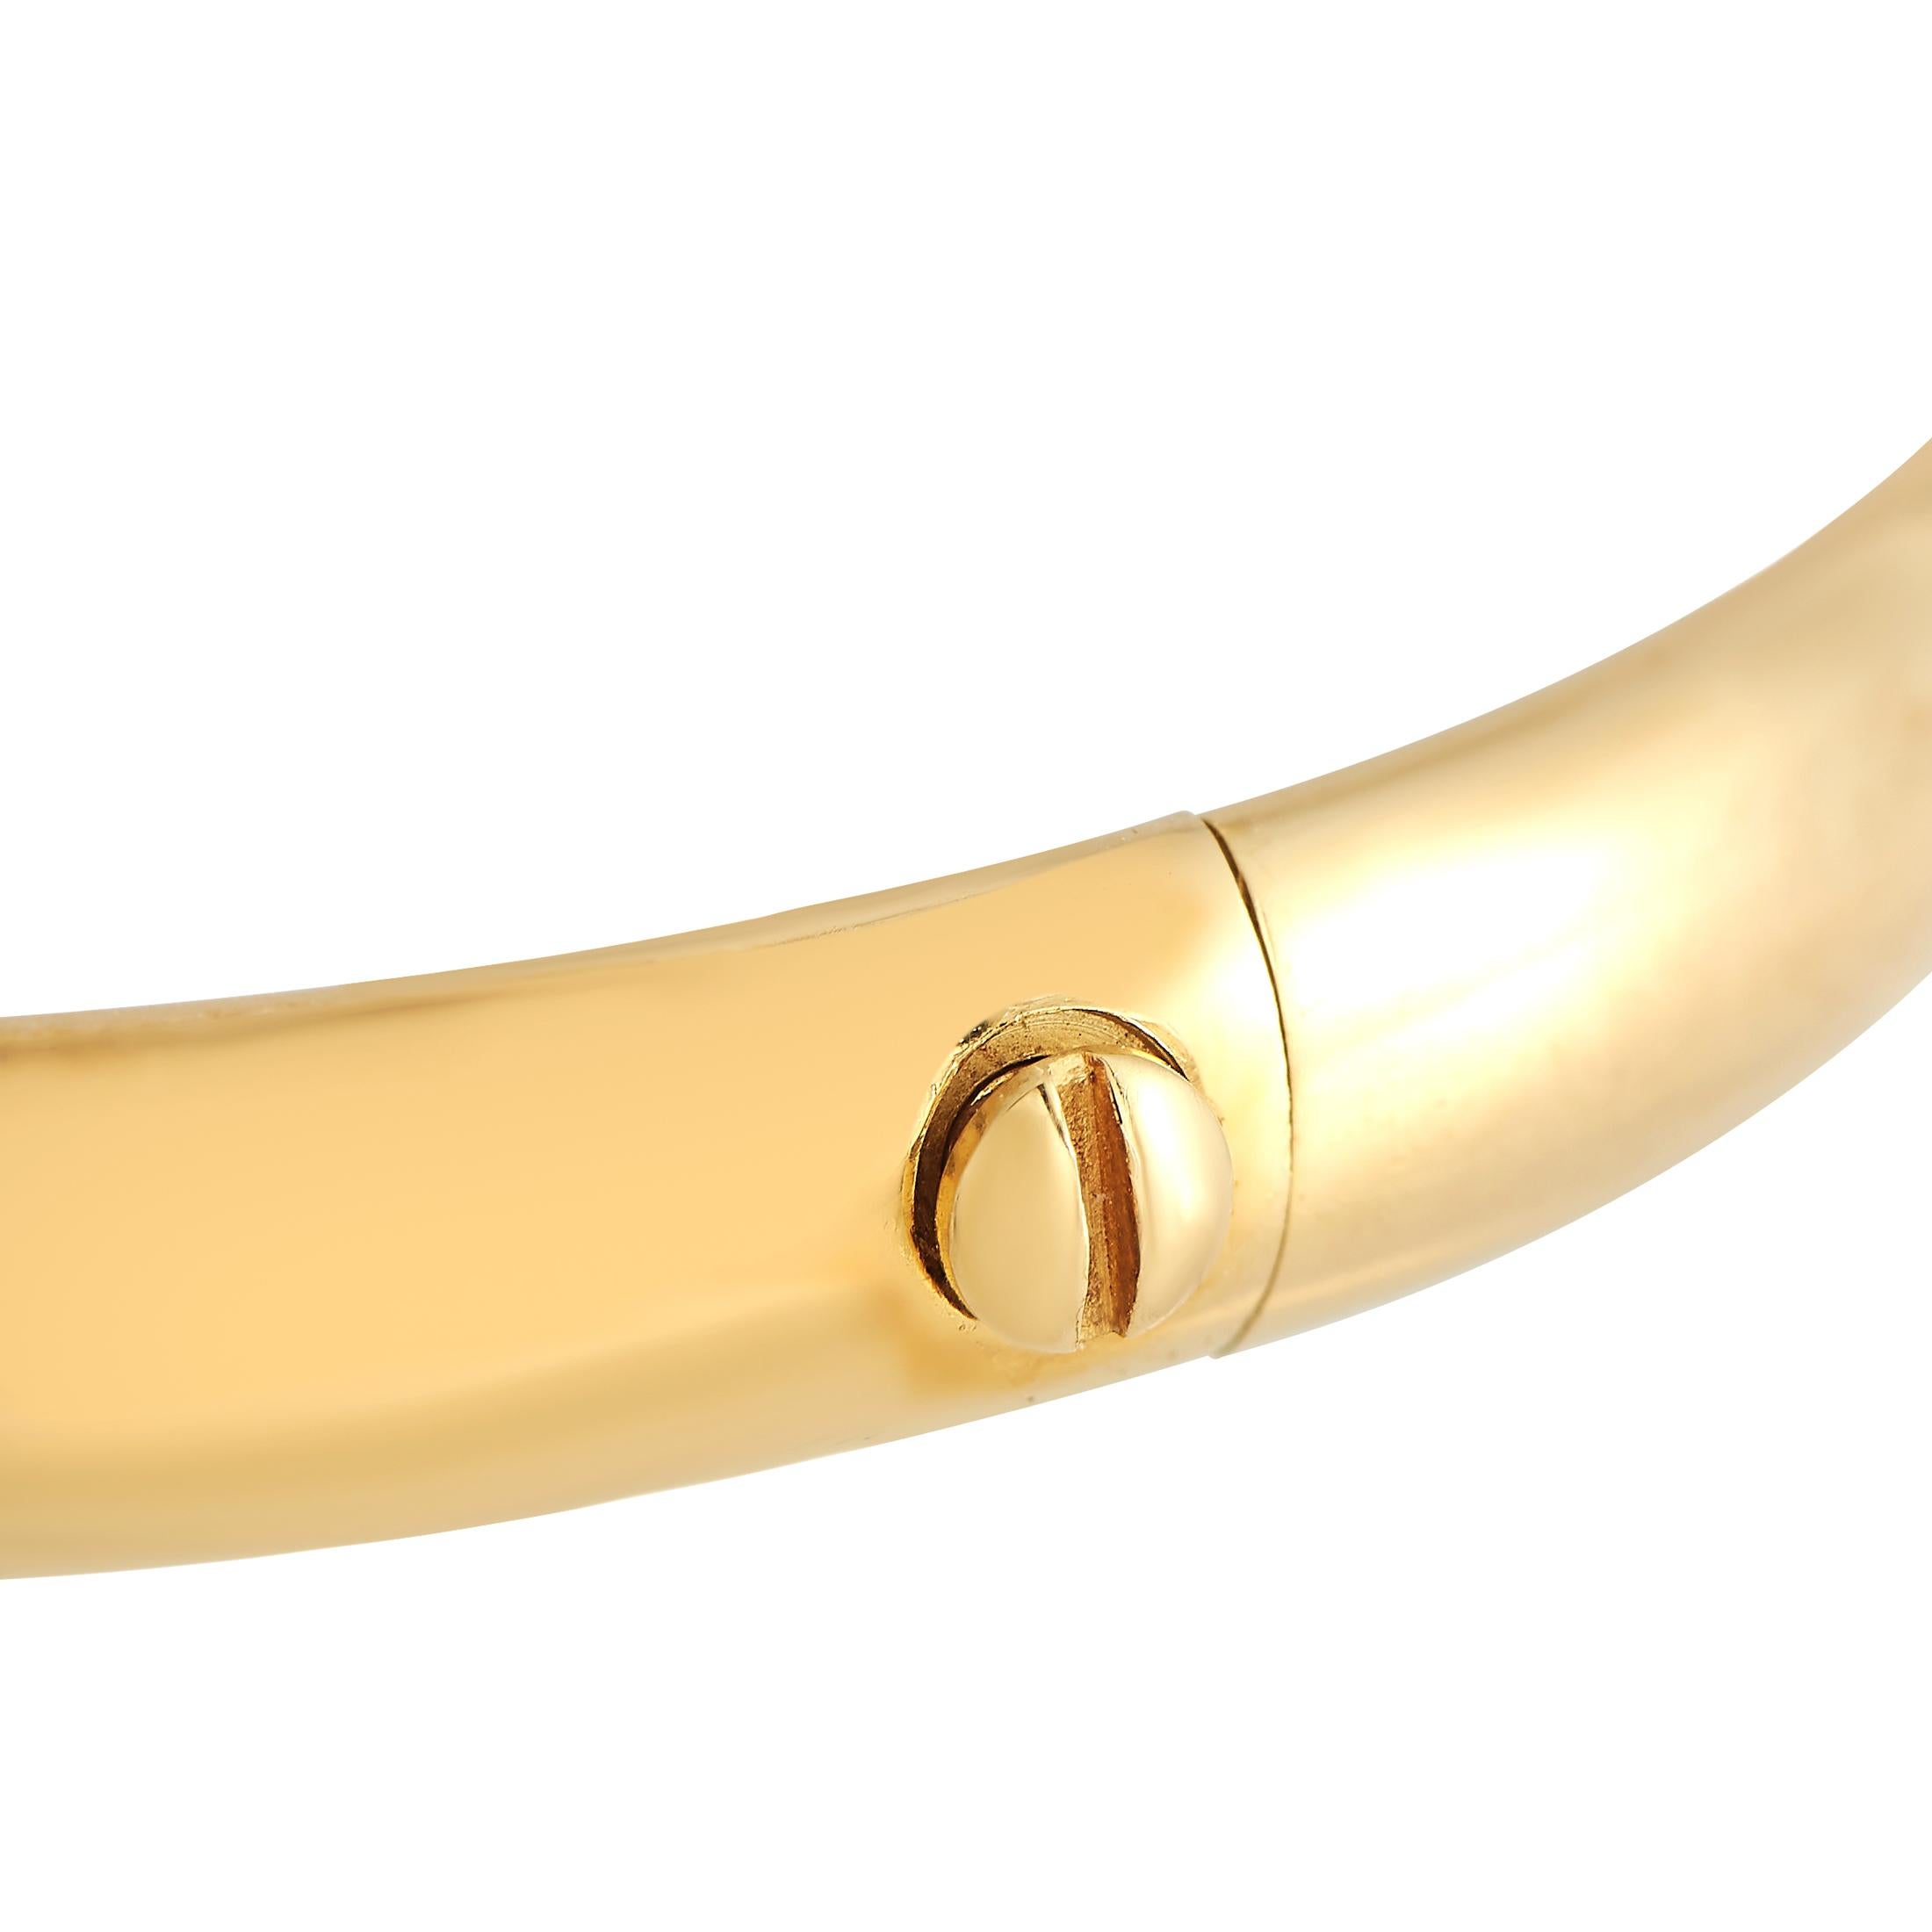 D'une élégance tranquille, ce bracelet Cartier est parfait pour être superposé, mélangé et assorti. Il se compose d'une bande rigide en or jaune massif 18K, détaillée par des cols cannelés croisés en or jaune, or rose et or blanc.Ce bracelet